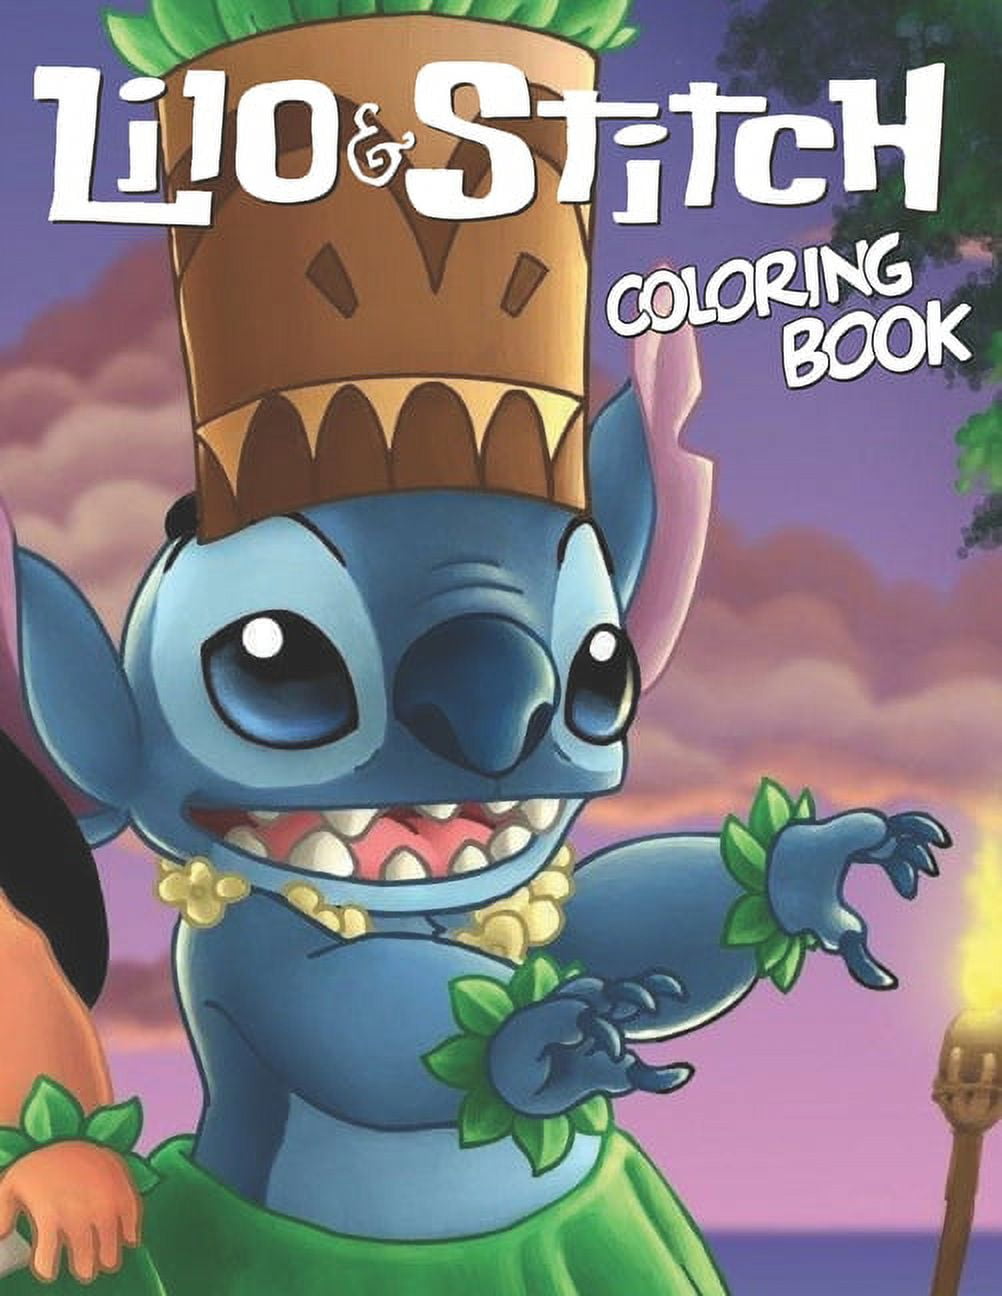 Lilo & Stitch Story Book – Mix and Match Magic